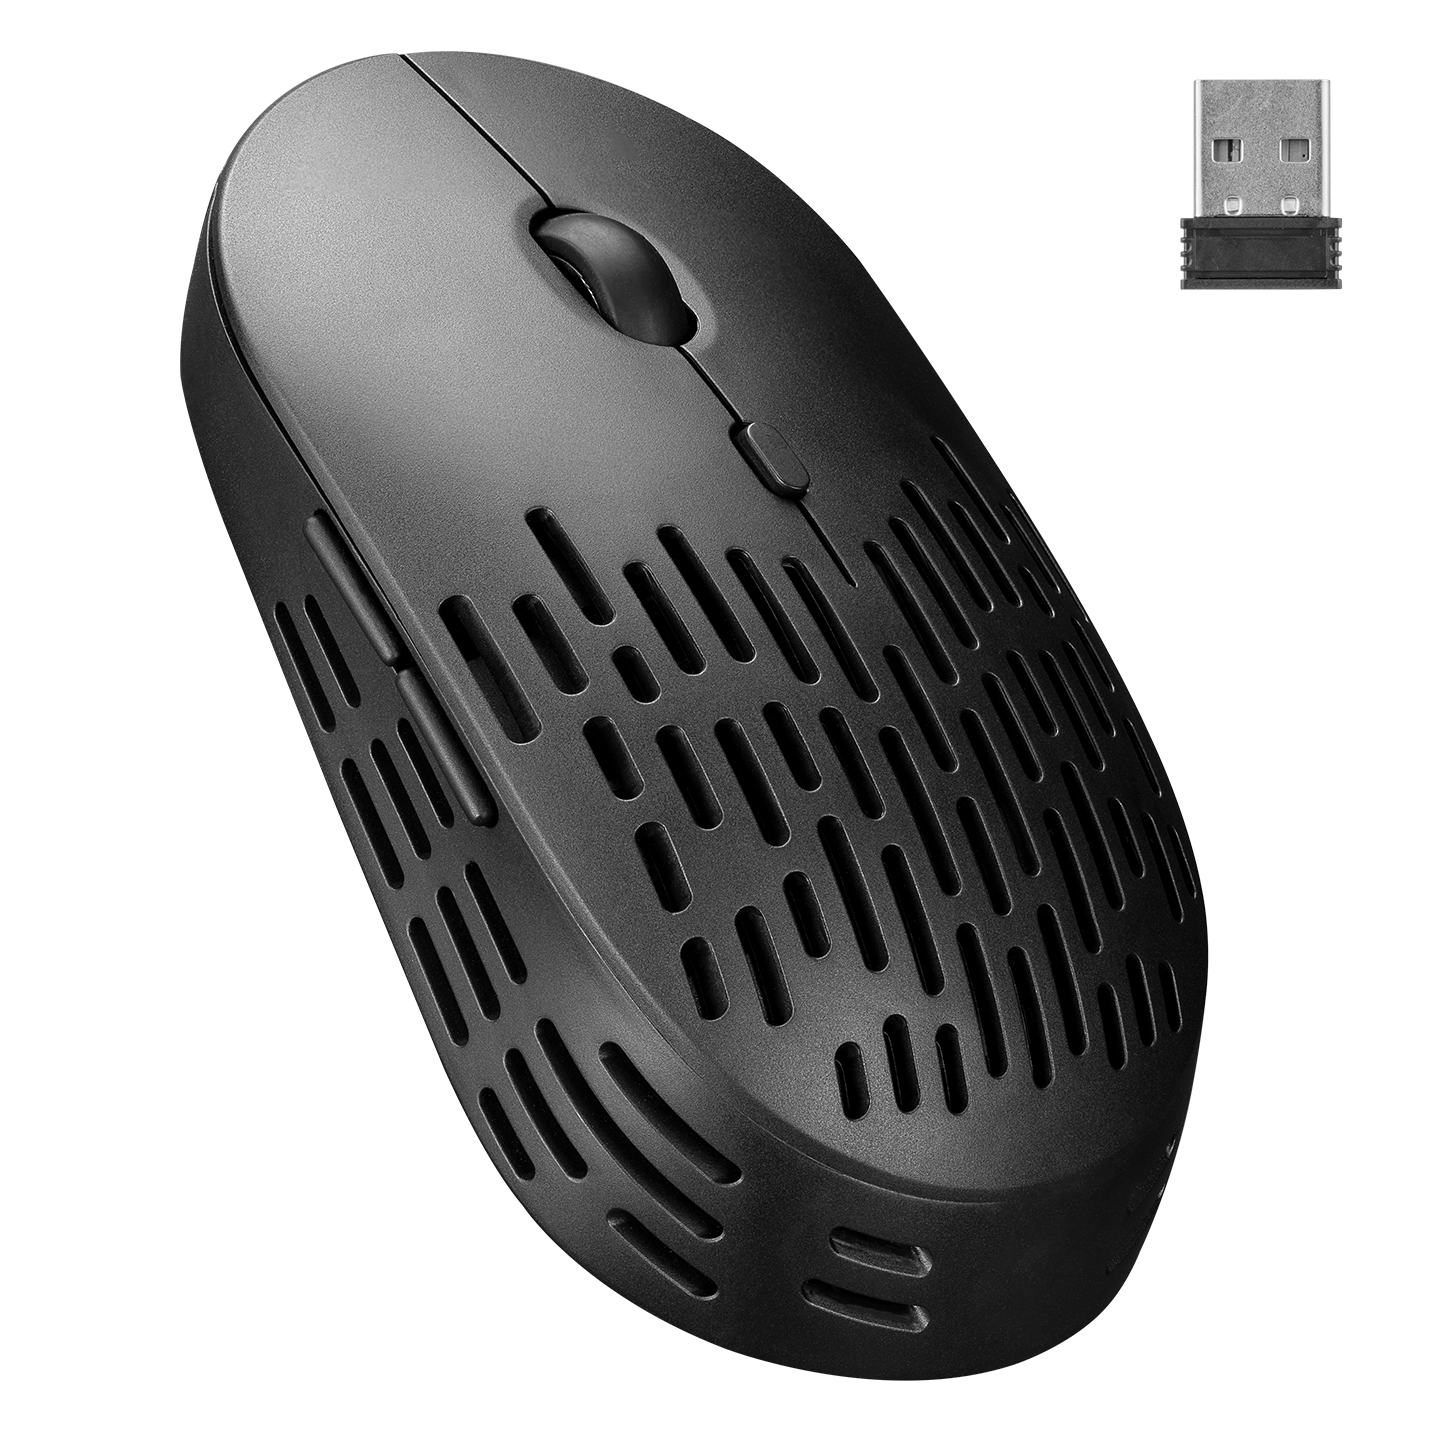 Altec Lansing ALBM7422 Siyah 2.4GHz Şarj Edilebilir Tek Renkli 1600DPI Optik Kablosuz Mouse